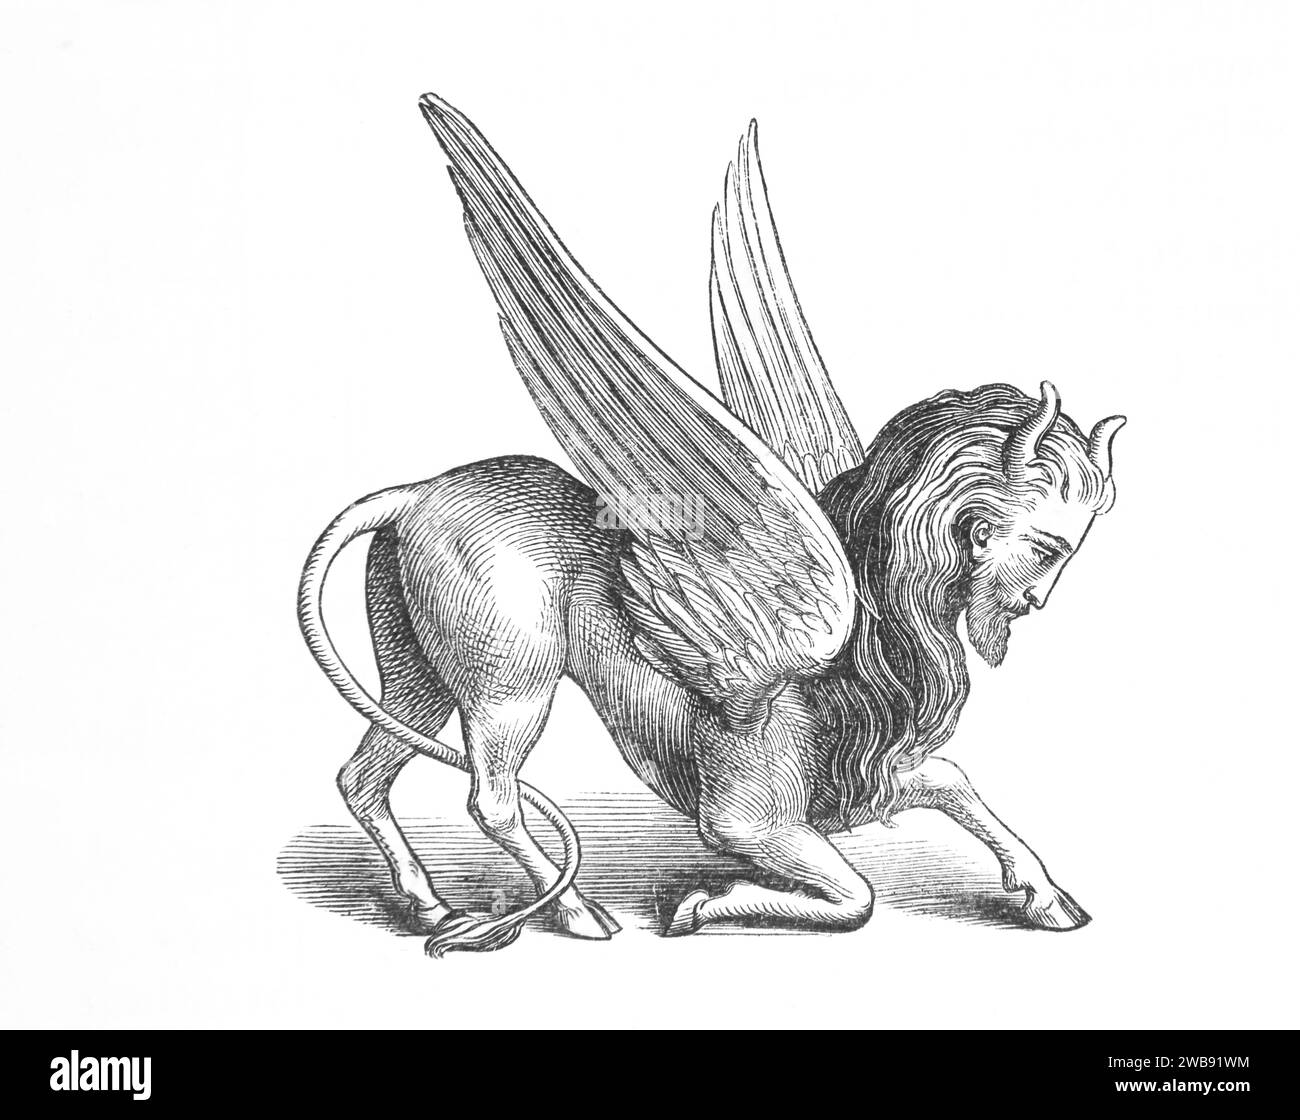 Gravure en bois d'un symbole chérubique avec un corps de cheval, queue de lion, ailes, visage humain avec cornes de la Bible de famille illustrée Banque D'Images